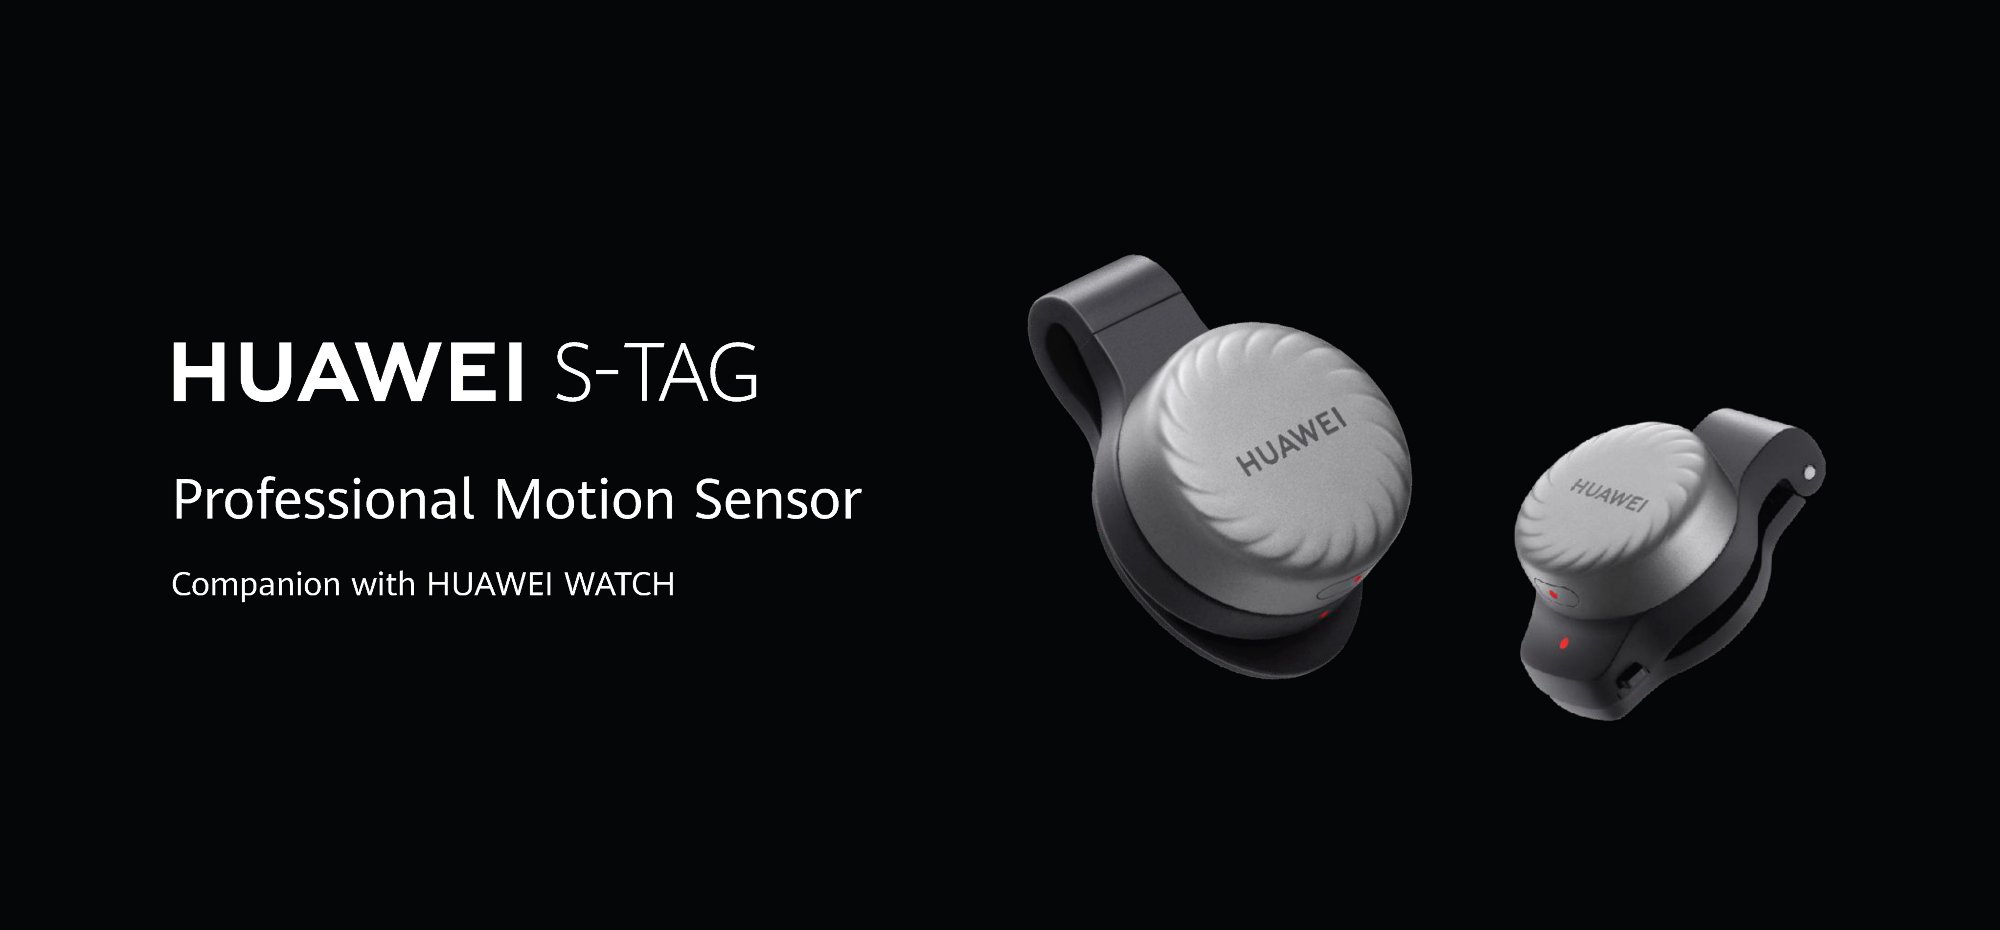 Huawei présente le S-Tag : une étiquette de sport intelligente avec un capteur de mouvement professionnel